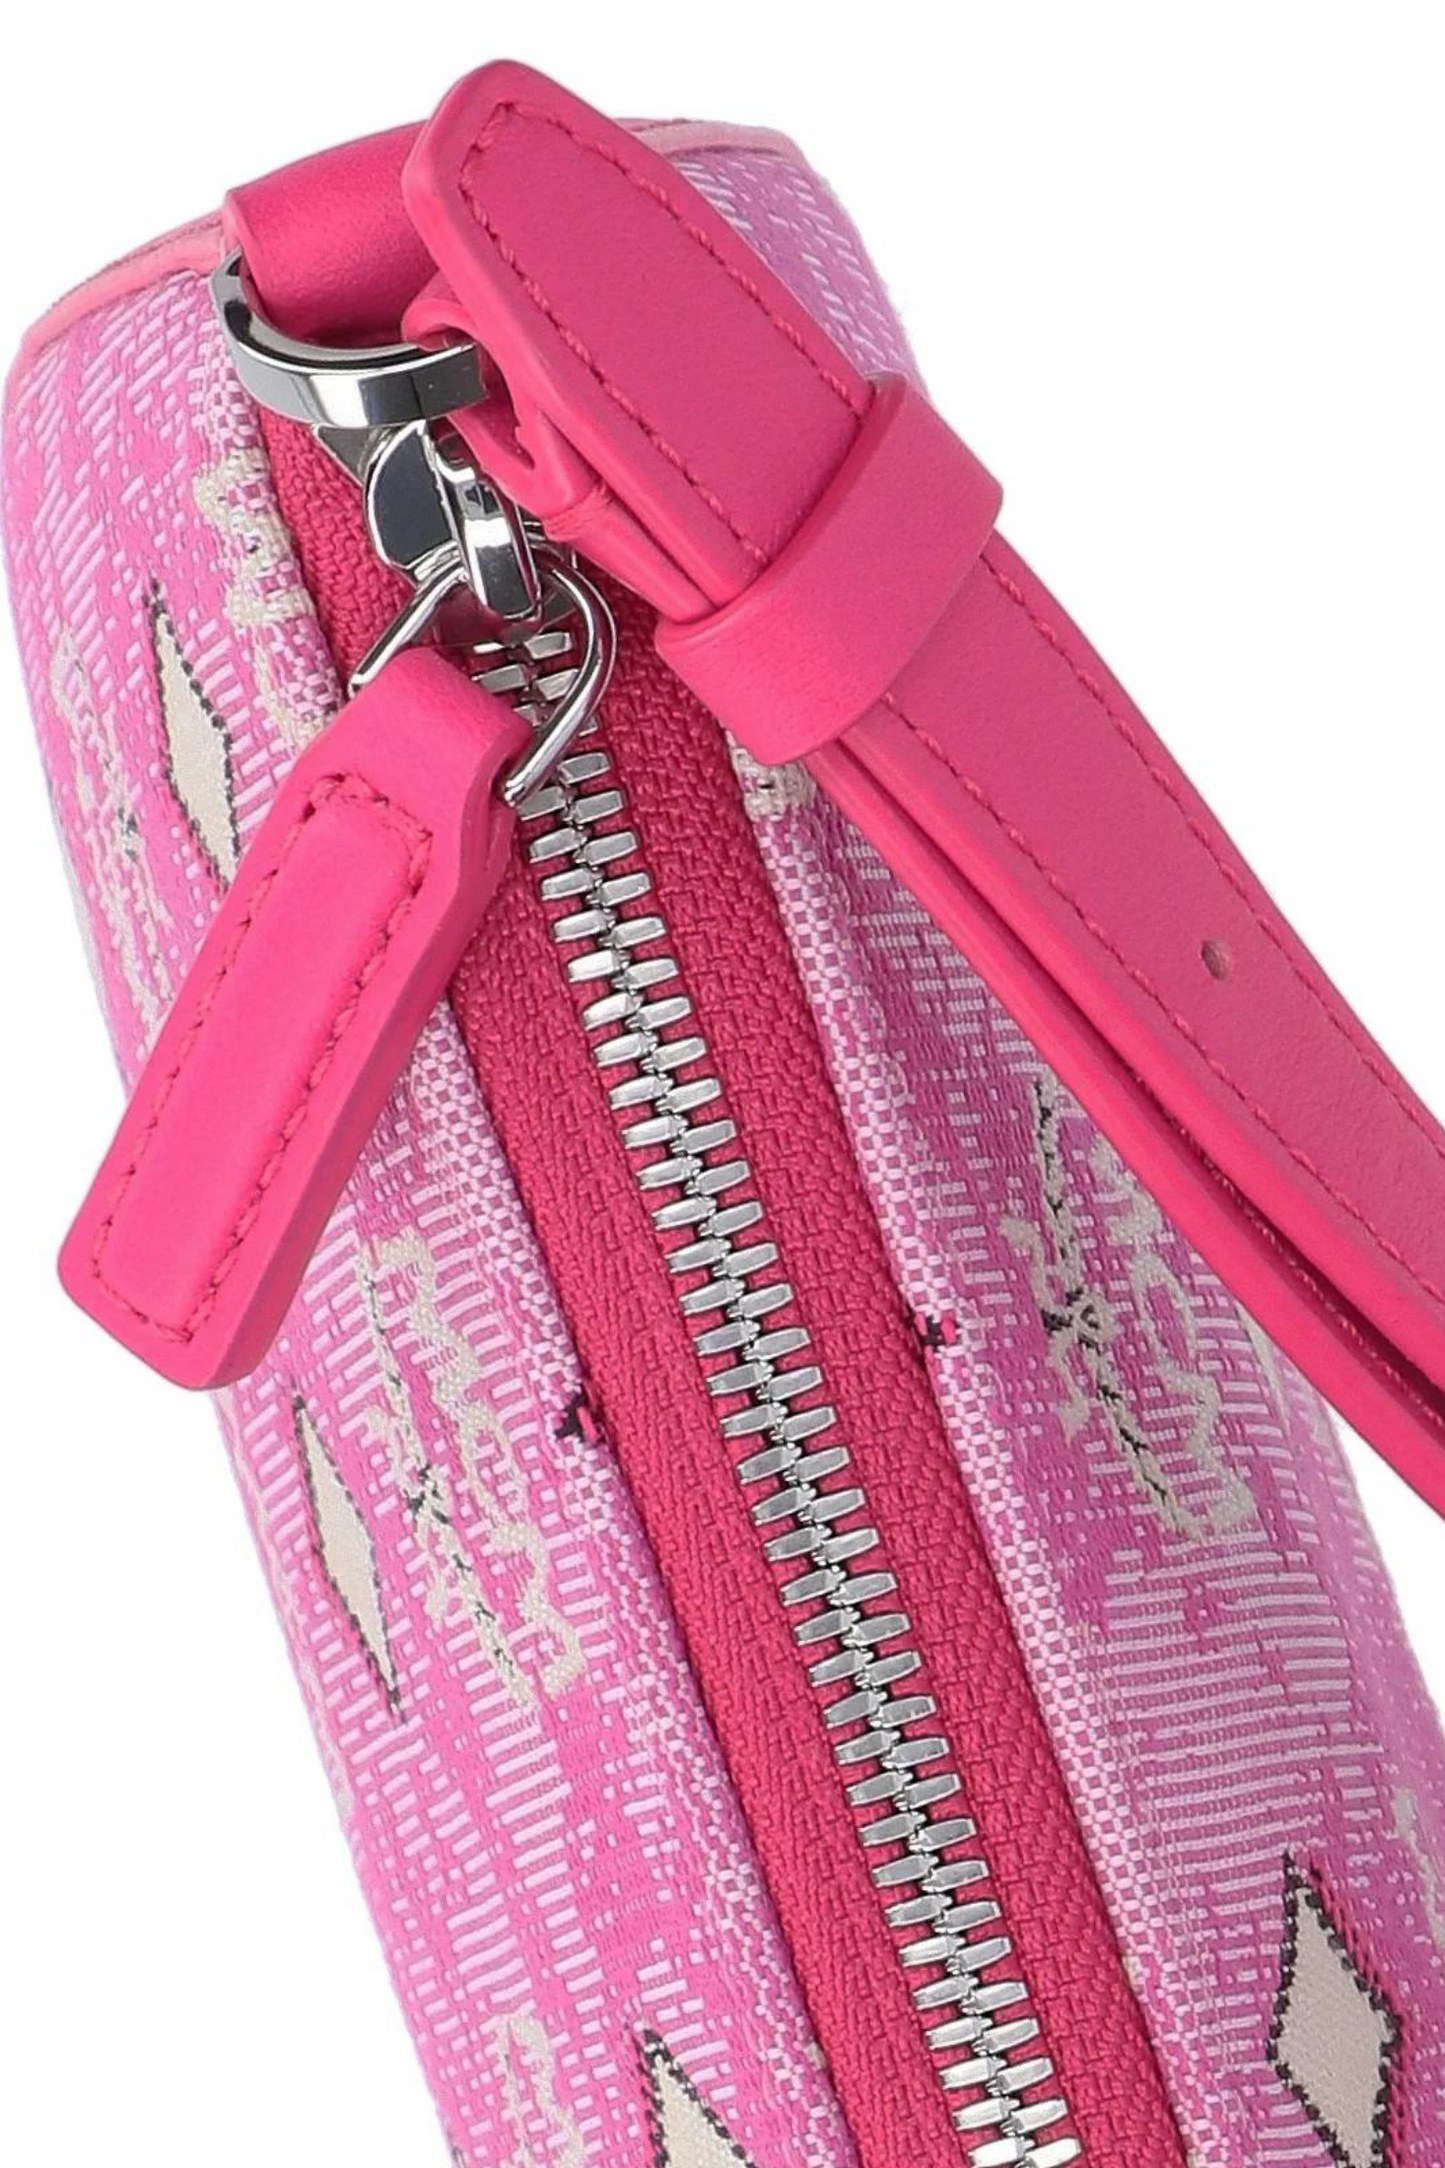 MCM Aren Shoulder Bag in Vintage Monogram Jacquard Pink